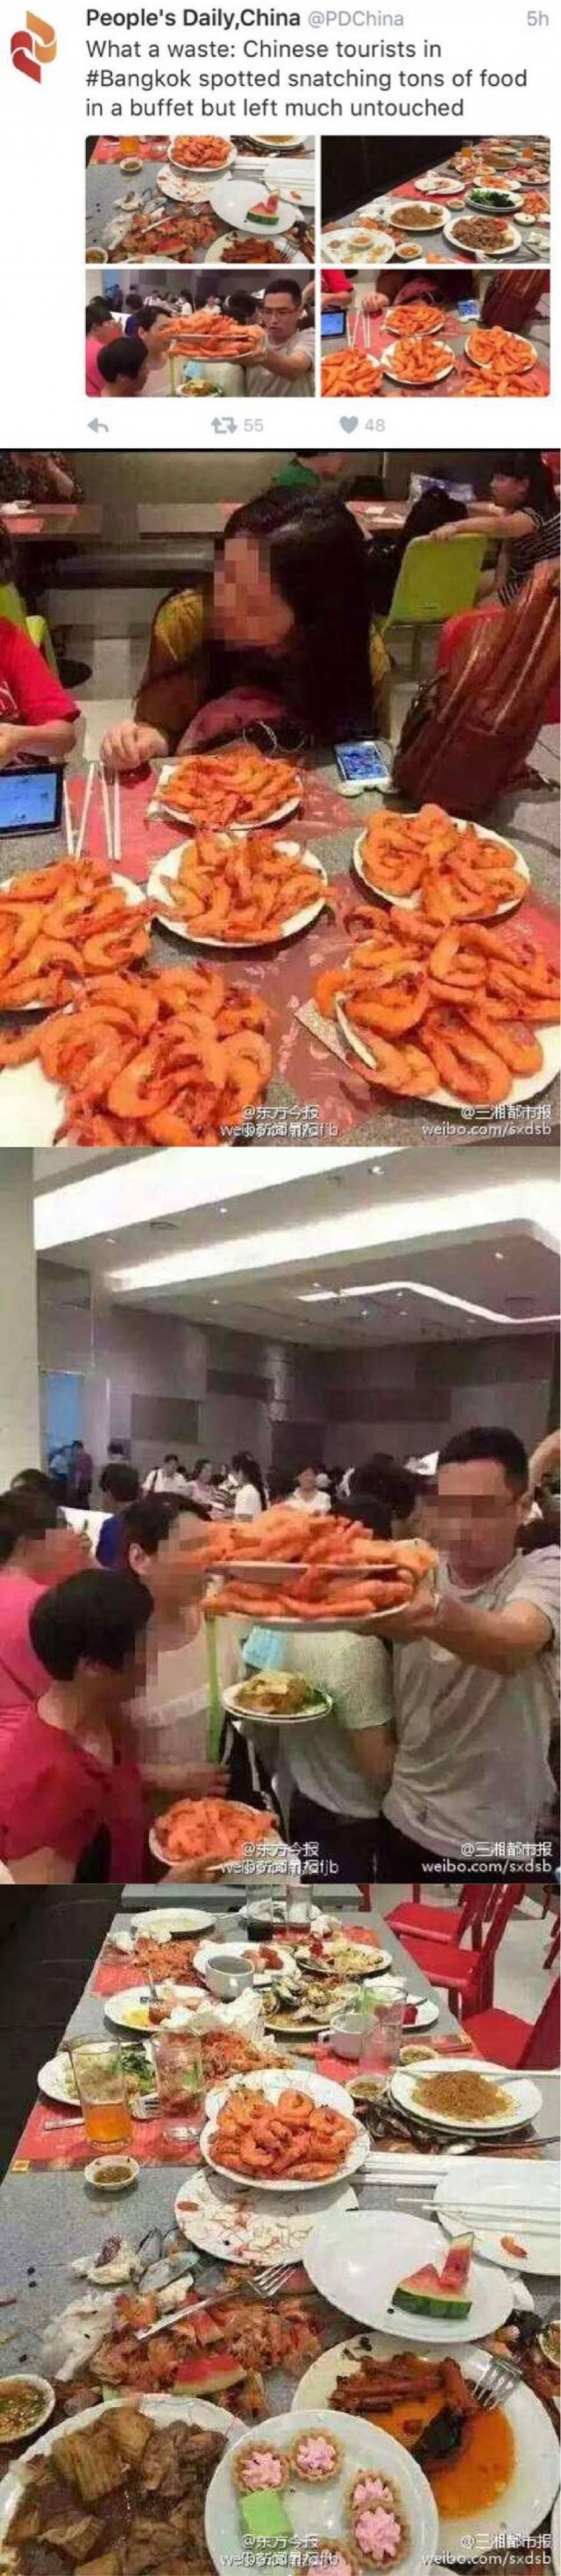 有网友爆料,称大批中国游客在泰国某海鲜自助餐厅抢虾,该场景被一名